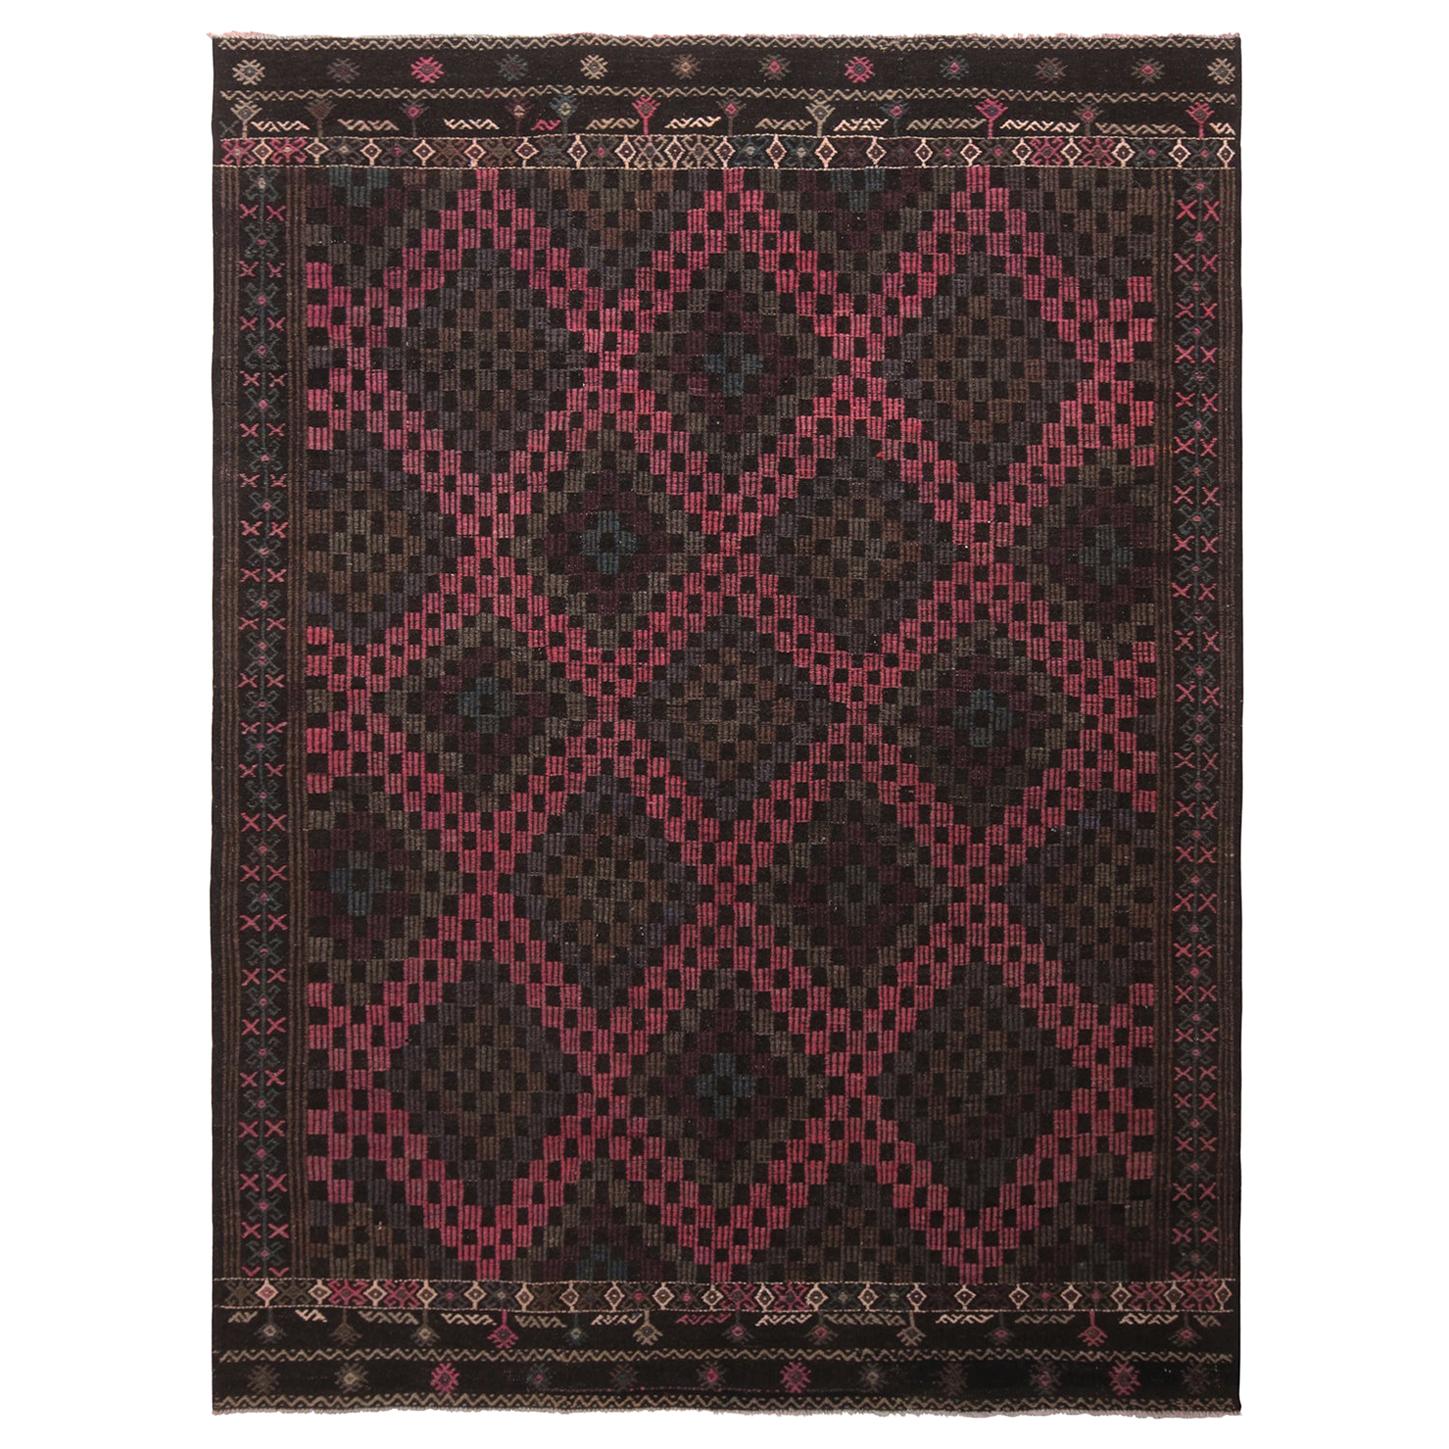 Vintage Midcentury Geometric Pink Purple and Brown Wool Kilim Rug by Rug & Kilim